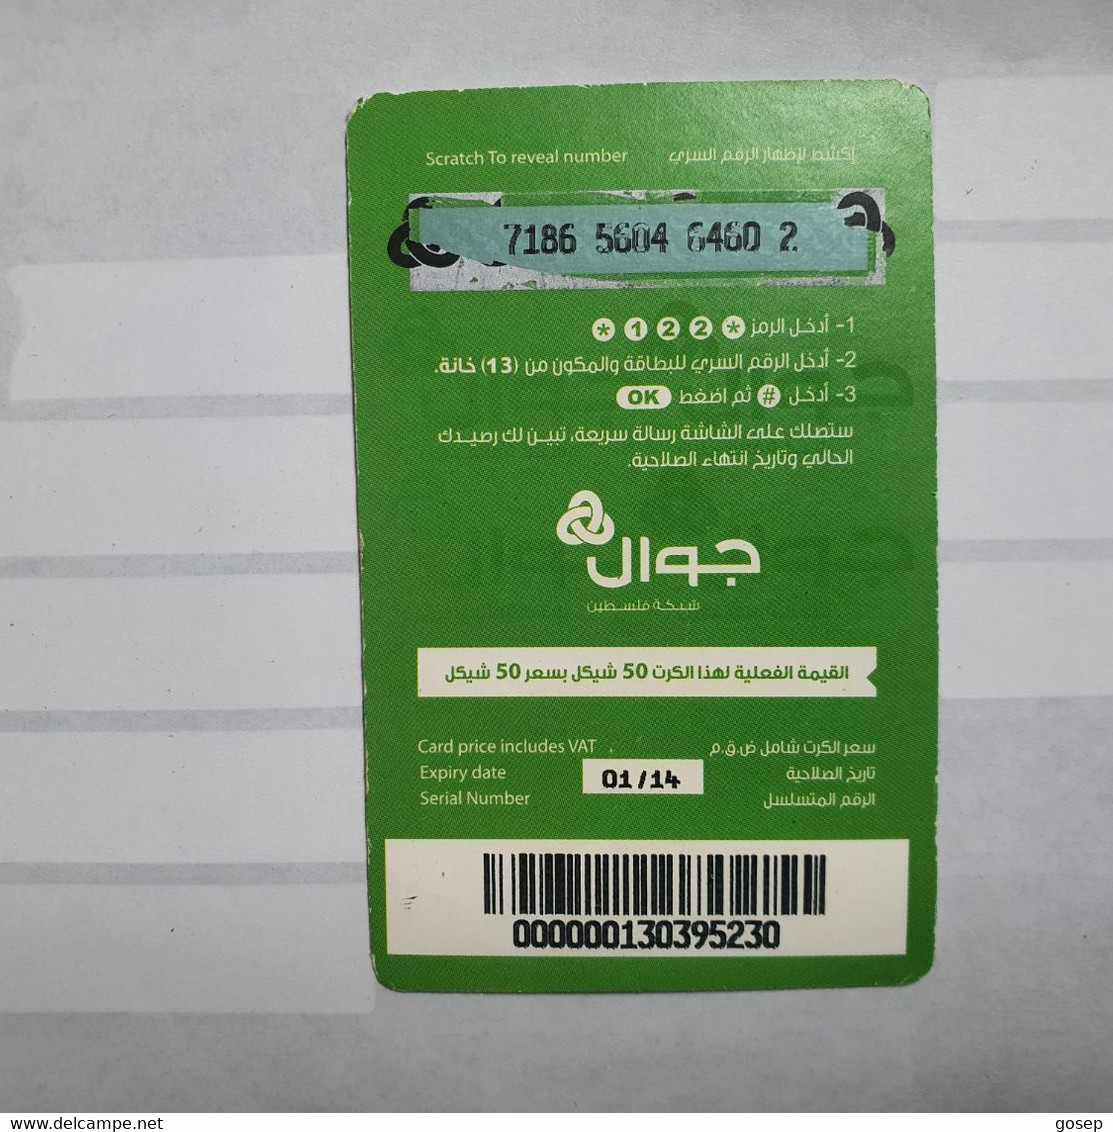 PALESTINE-(PA-G-0004)-jawwal New Logo-(4)-(50units)-(7186-5604-6460-2)-used Card-1 Prepiad Free - Palästina